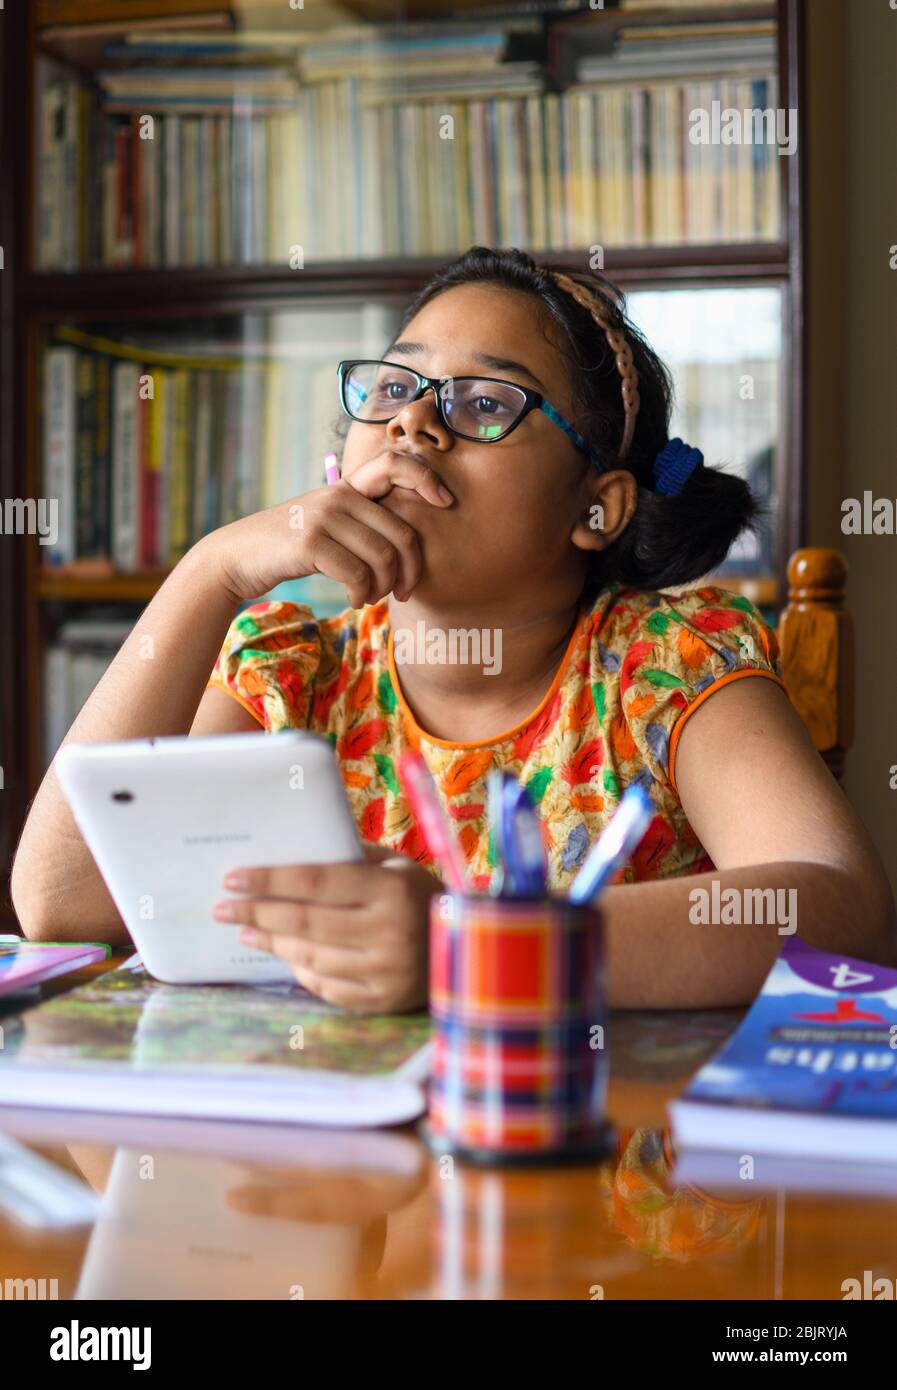 Jolie petite fille indienne étudiant à la maison pendant la période de verrouillage en raison de la pandémie du virus Corona Banque D'Images